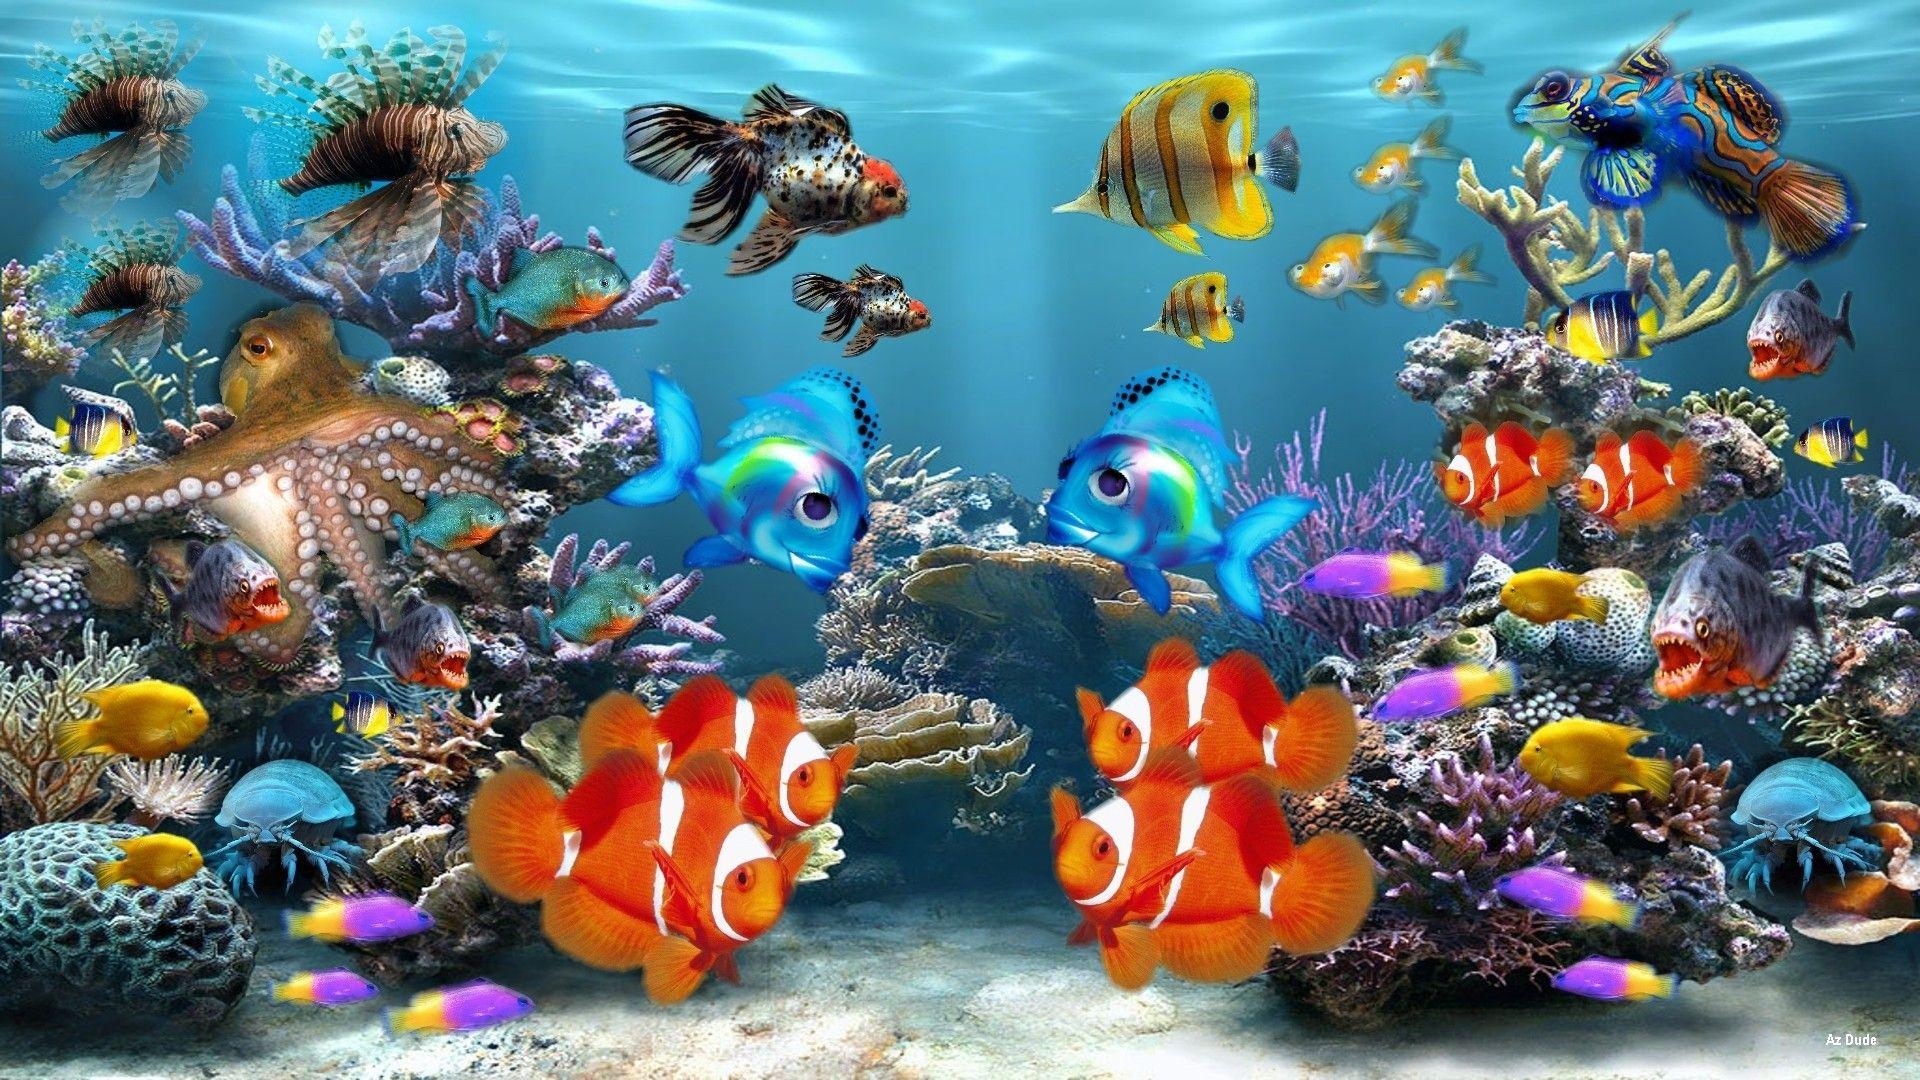 Wallpaper Bergerak Aquarium 3d Image Num 46